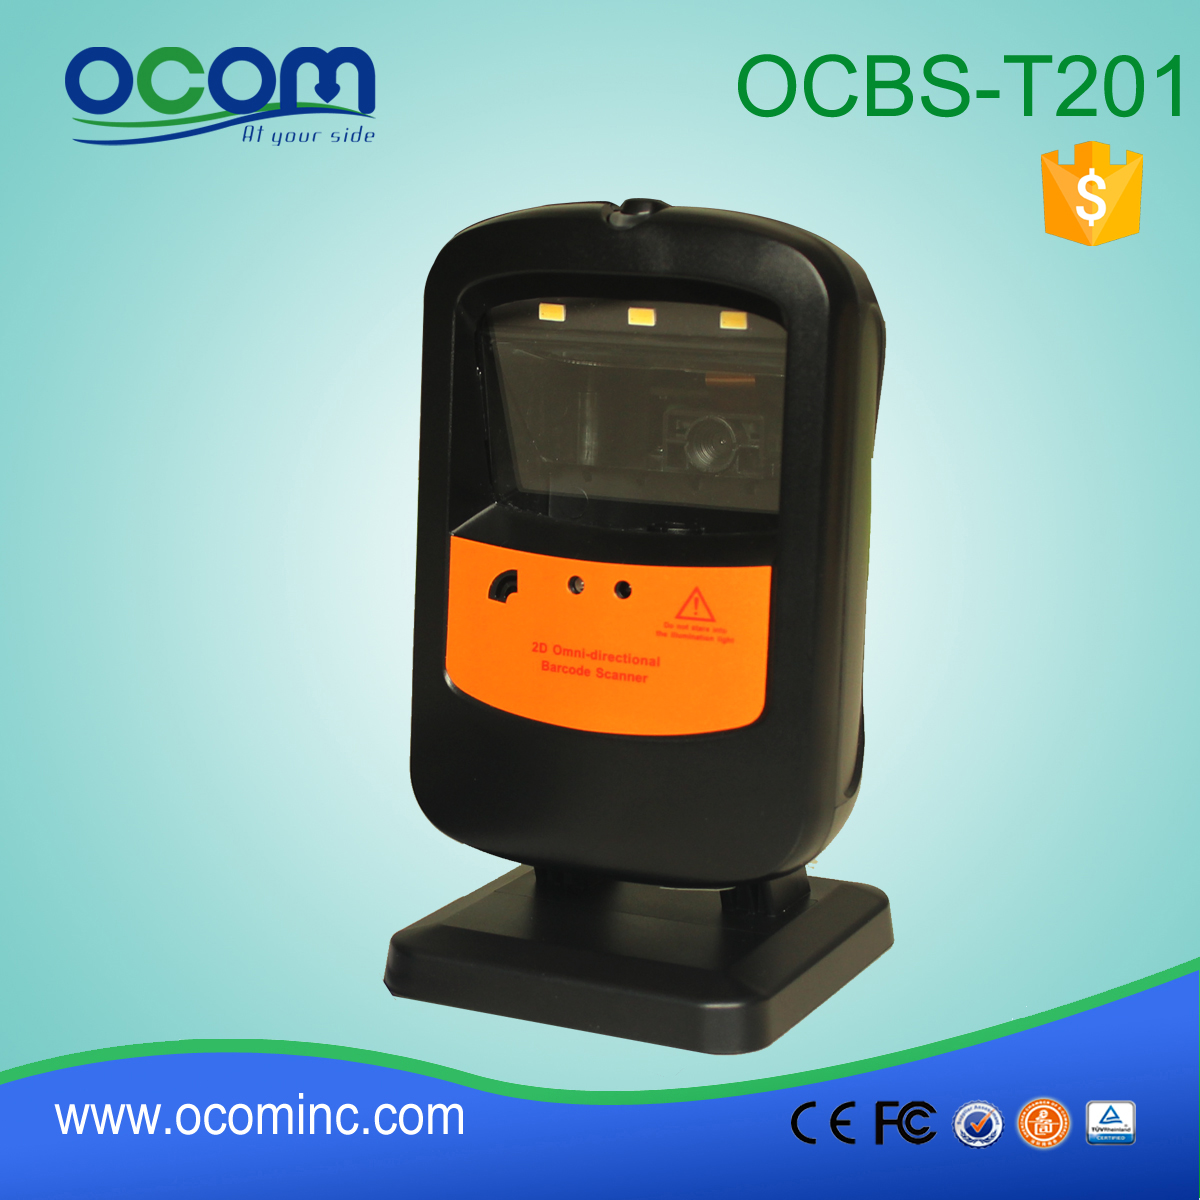 OCBS-T201: qr barcode scanner machine, vaste mount barcodescanner